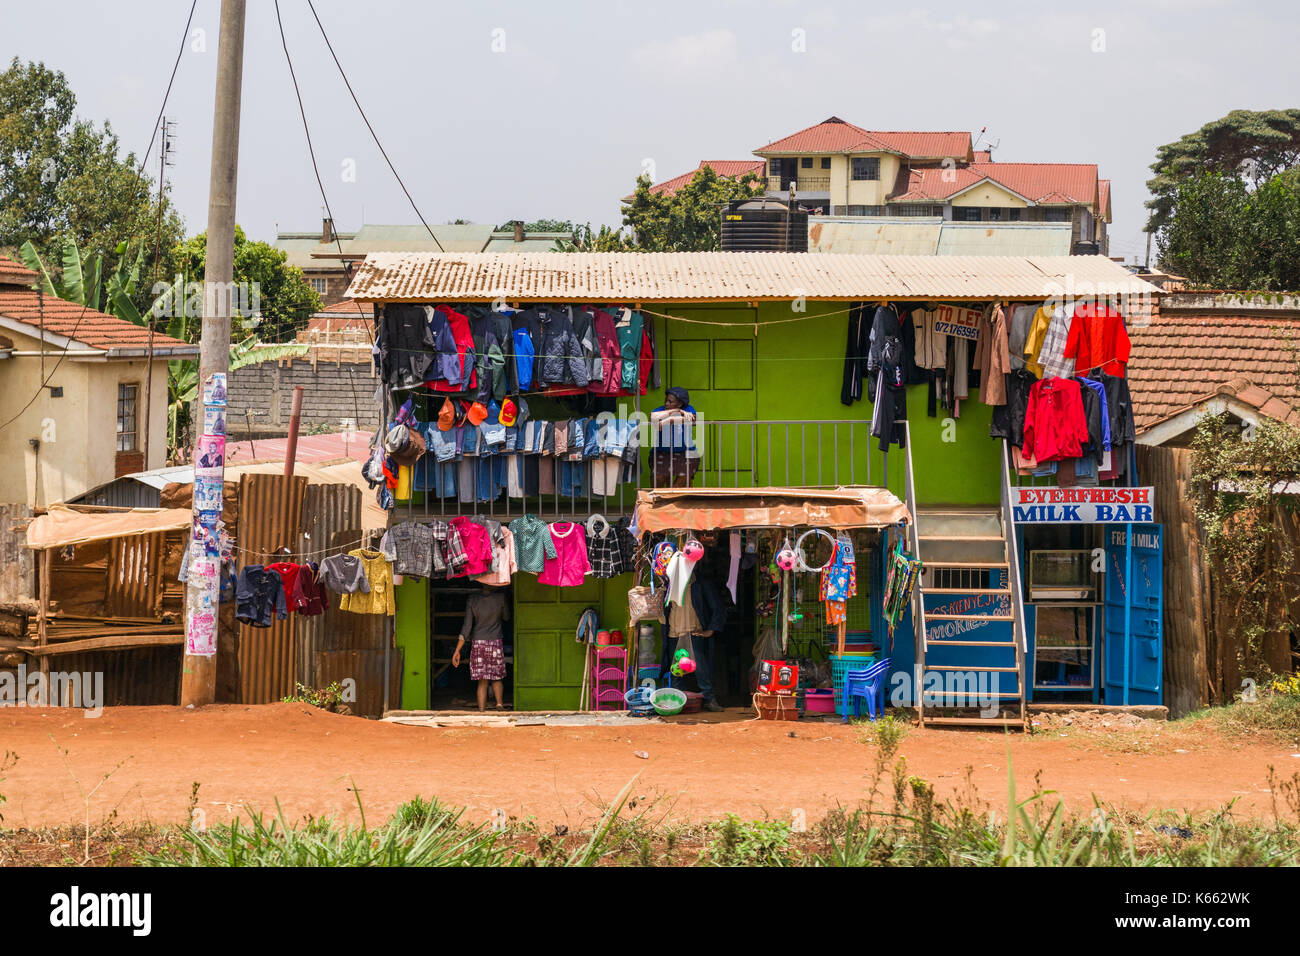 Un piccolo edificio con negozi di abbigliamento e vestiti appesi all'esterno, Kenya Foto Stock